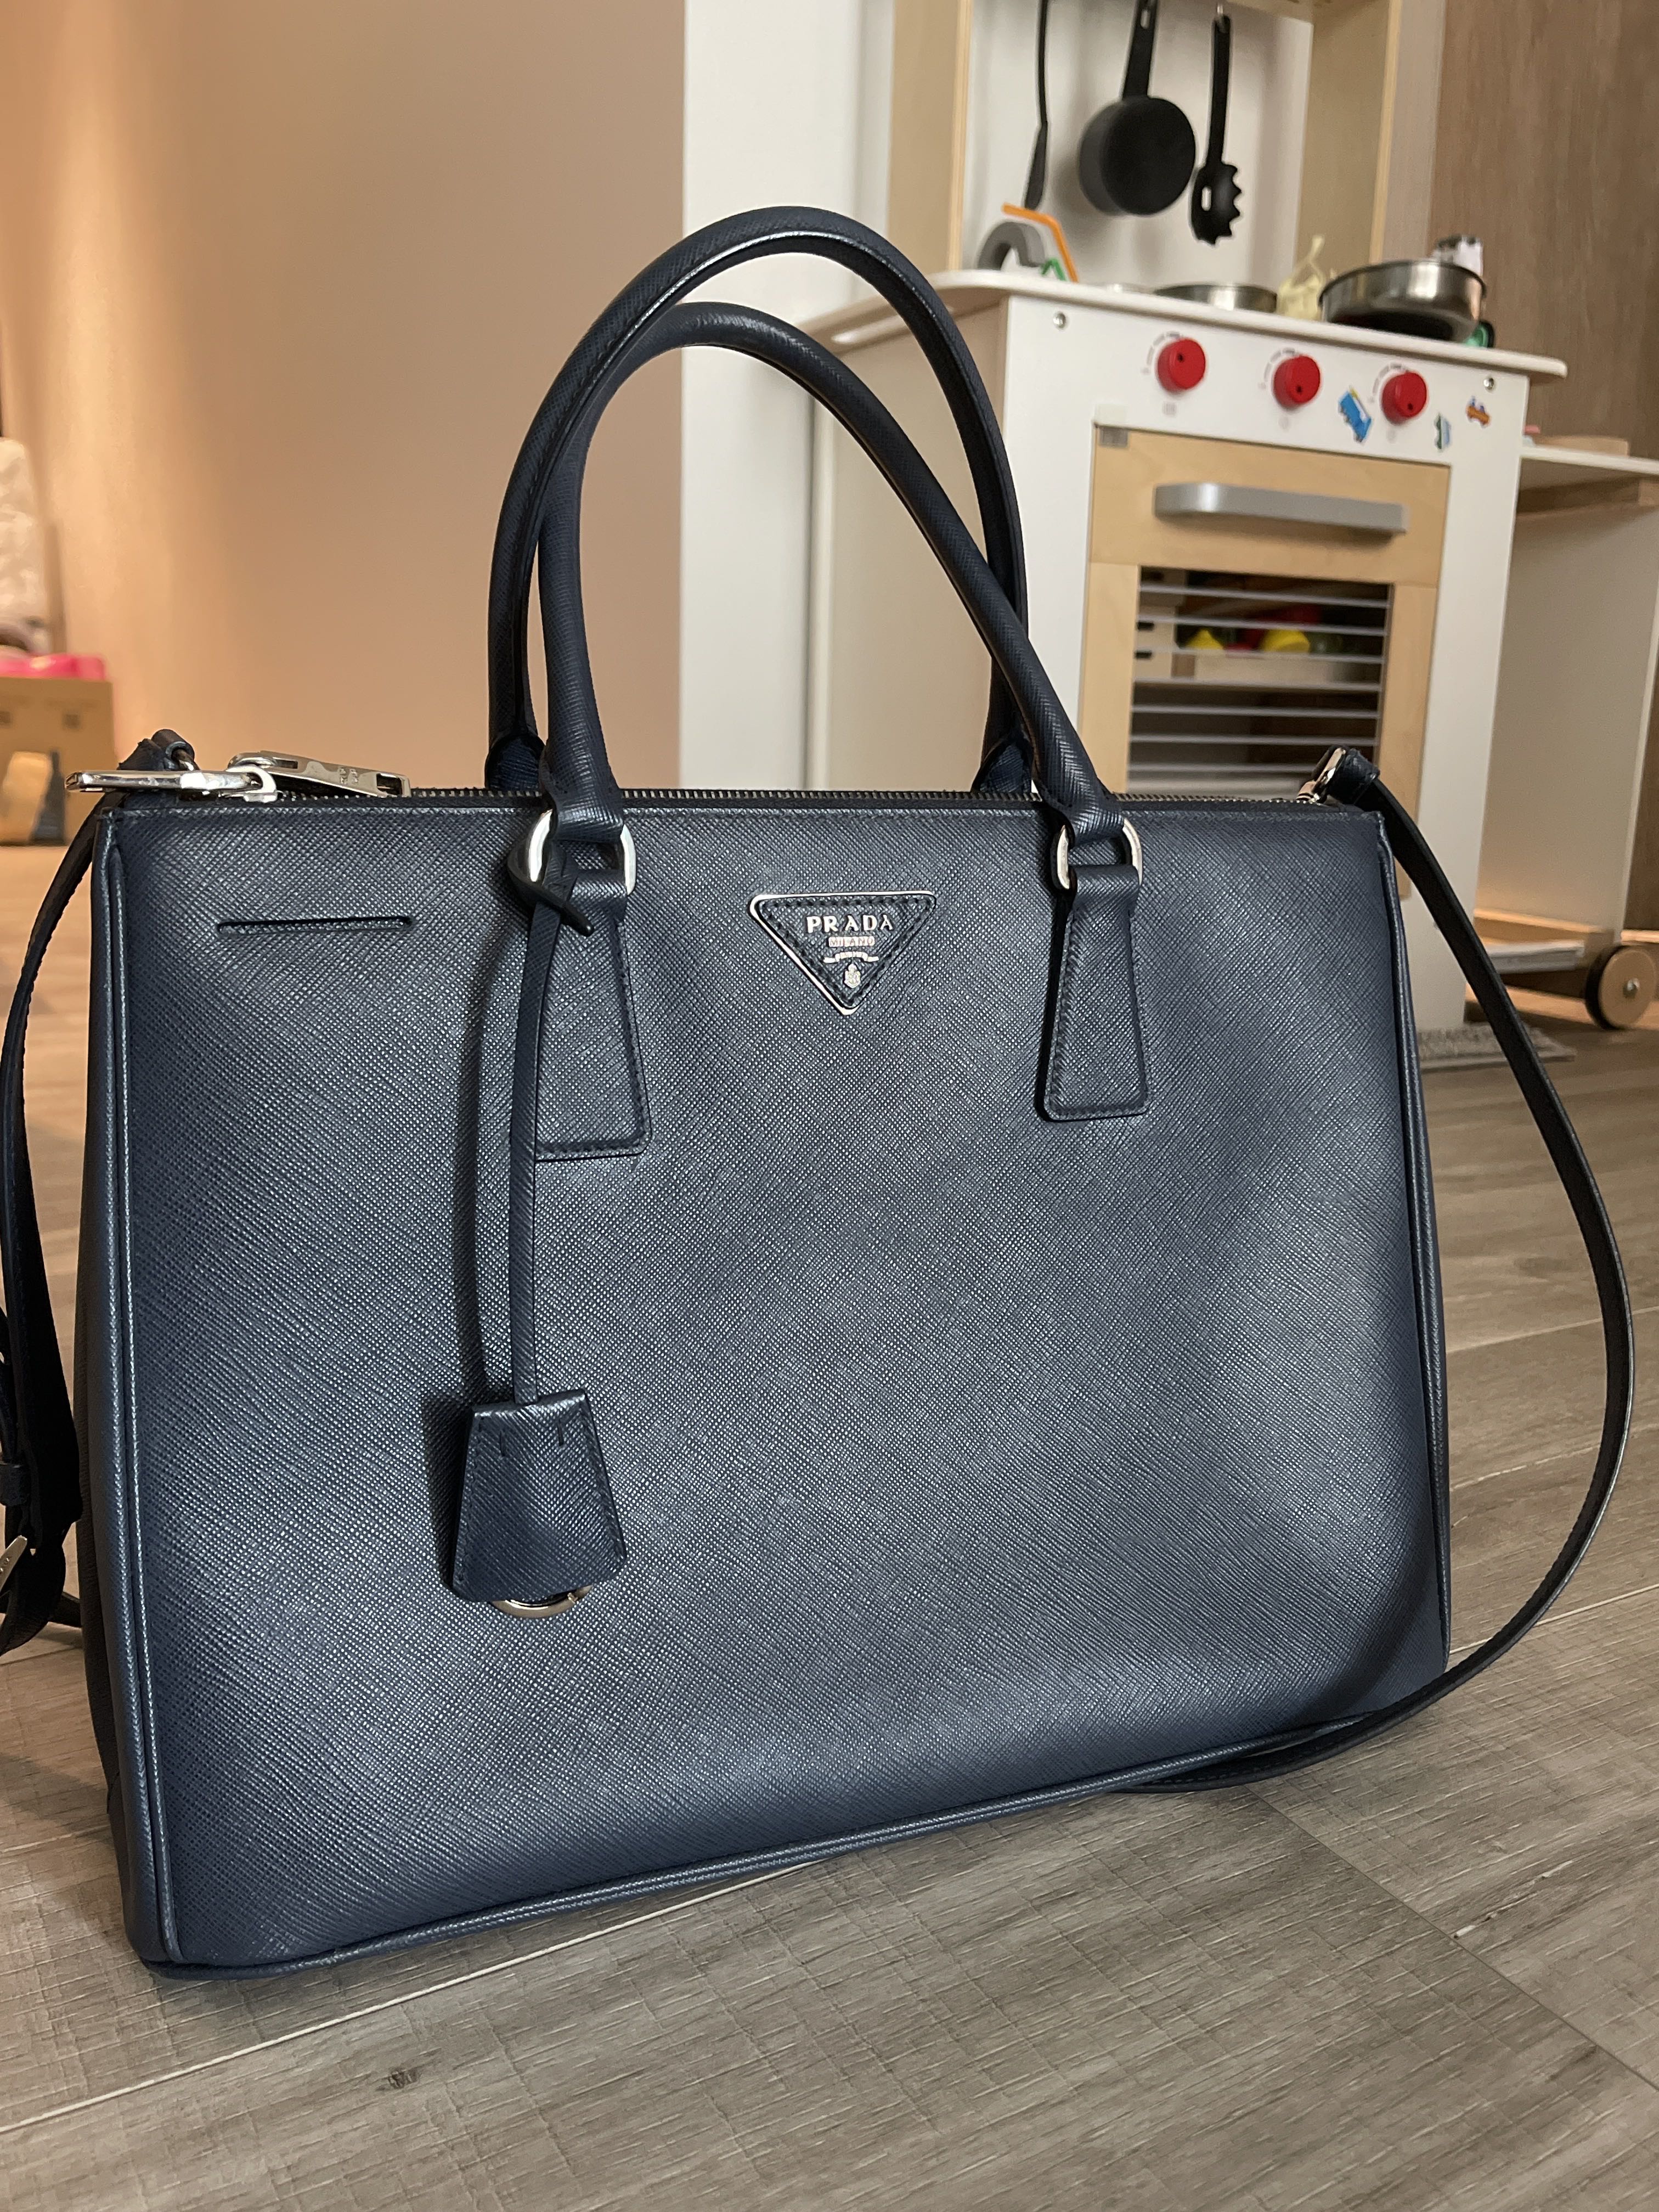 Prada Galleria Saffiano Leather Bag w/ Silver Hardware